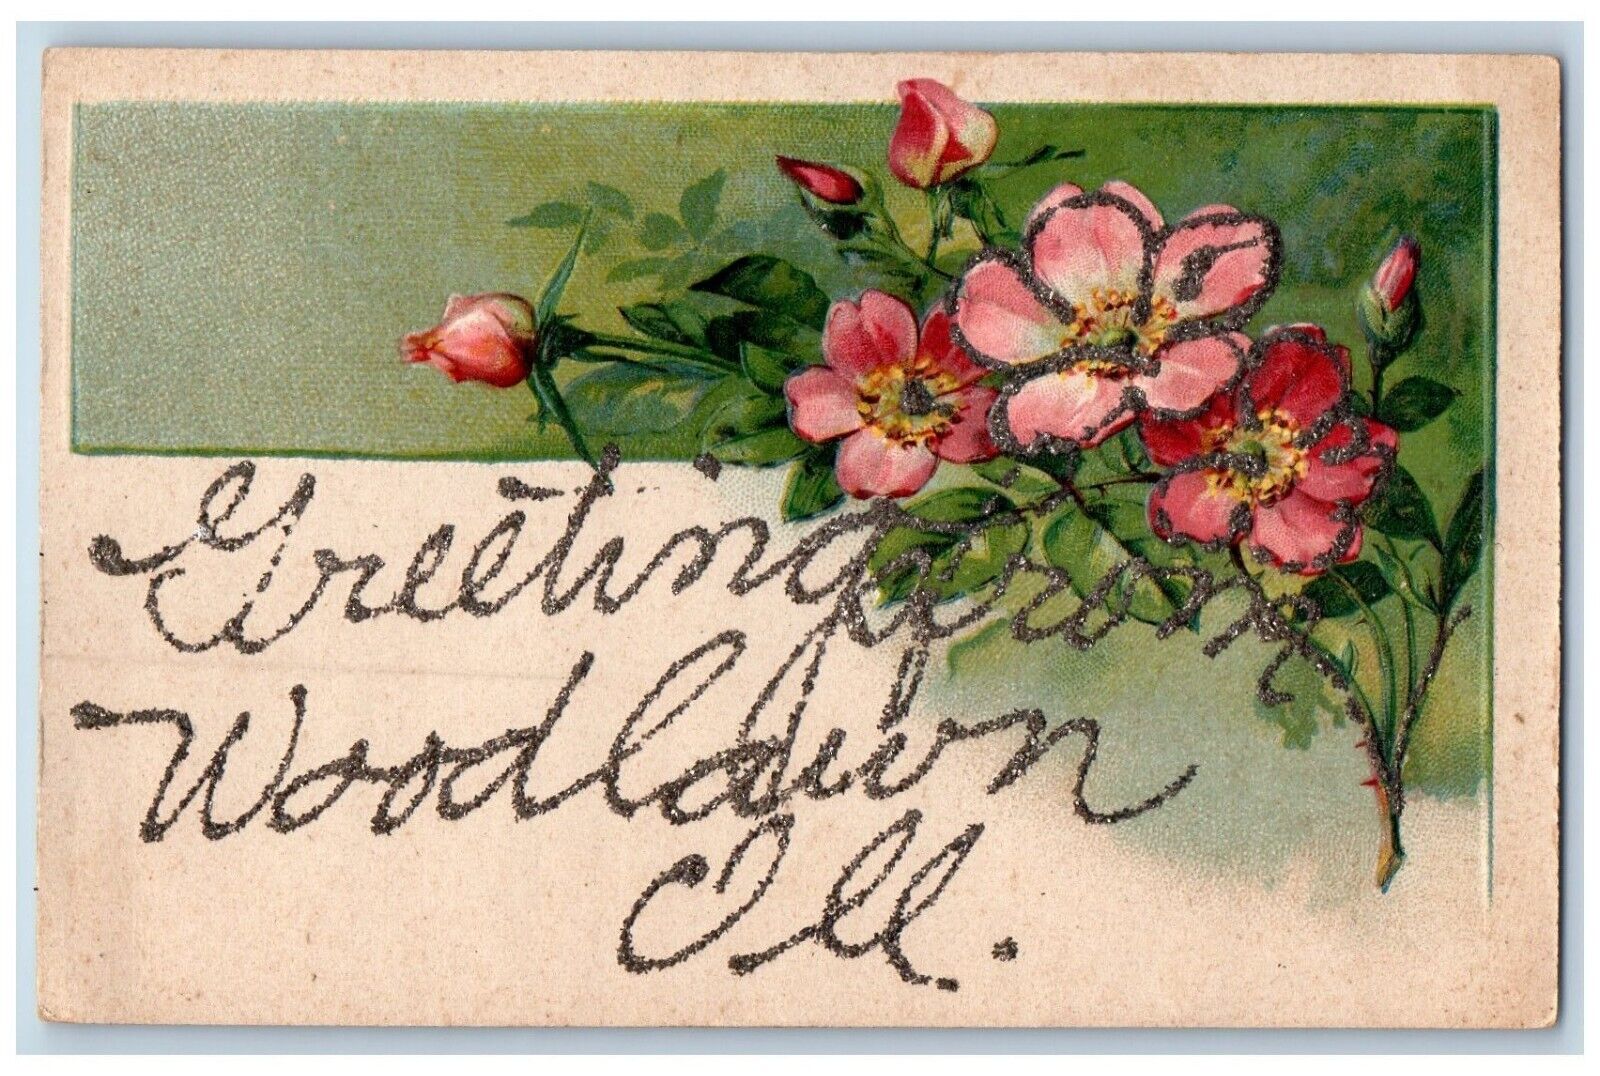 Woodlawn Illinois IL Postcard Greetings Embossed Glitter Flowers c1910 Vintage